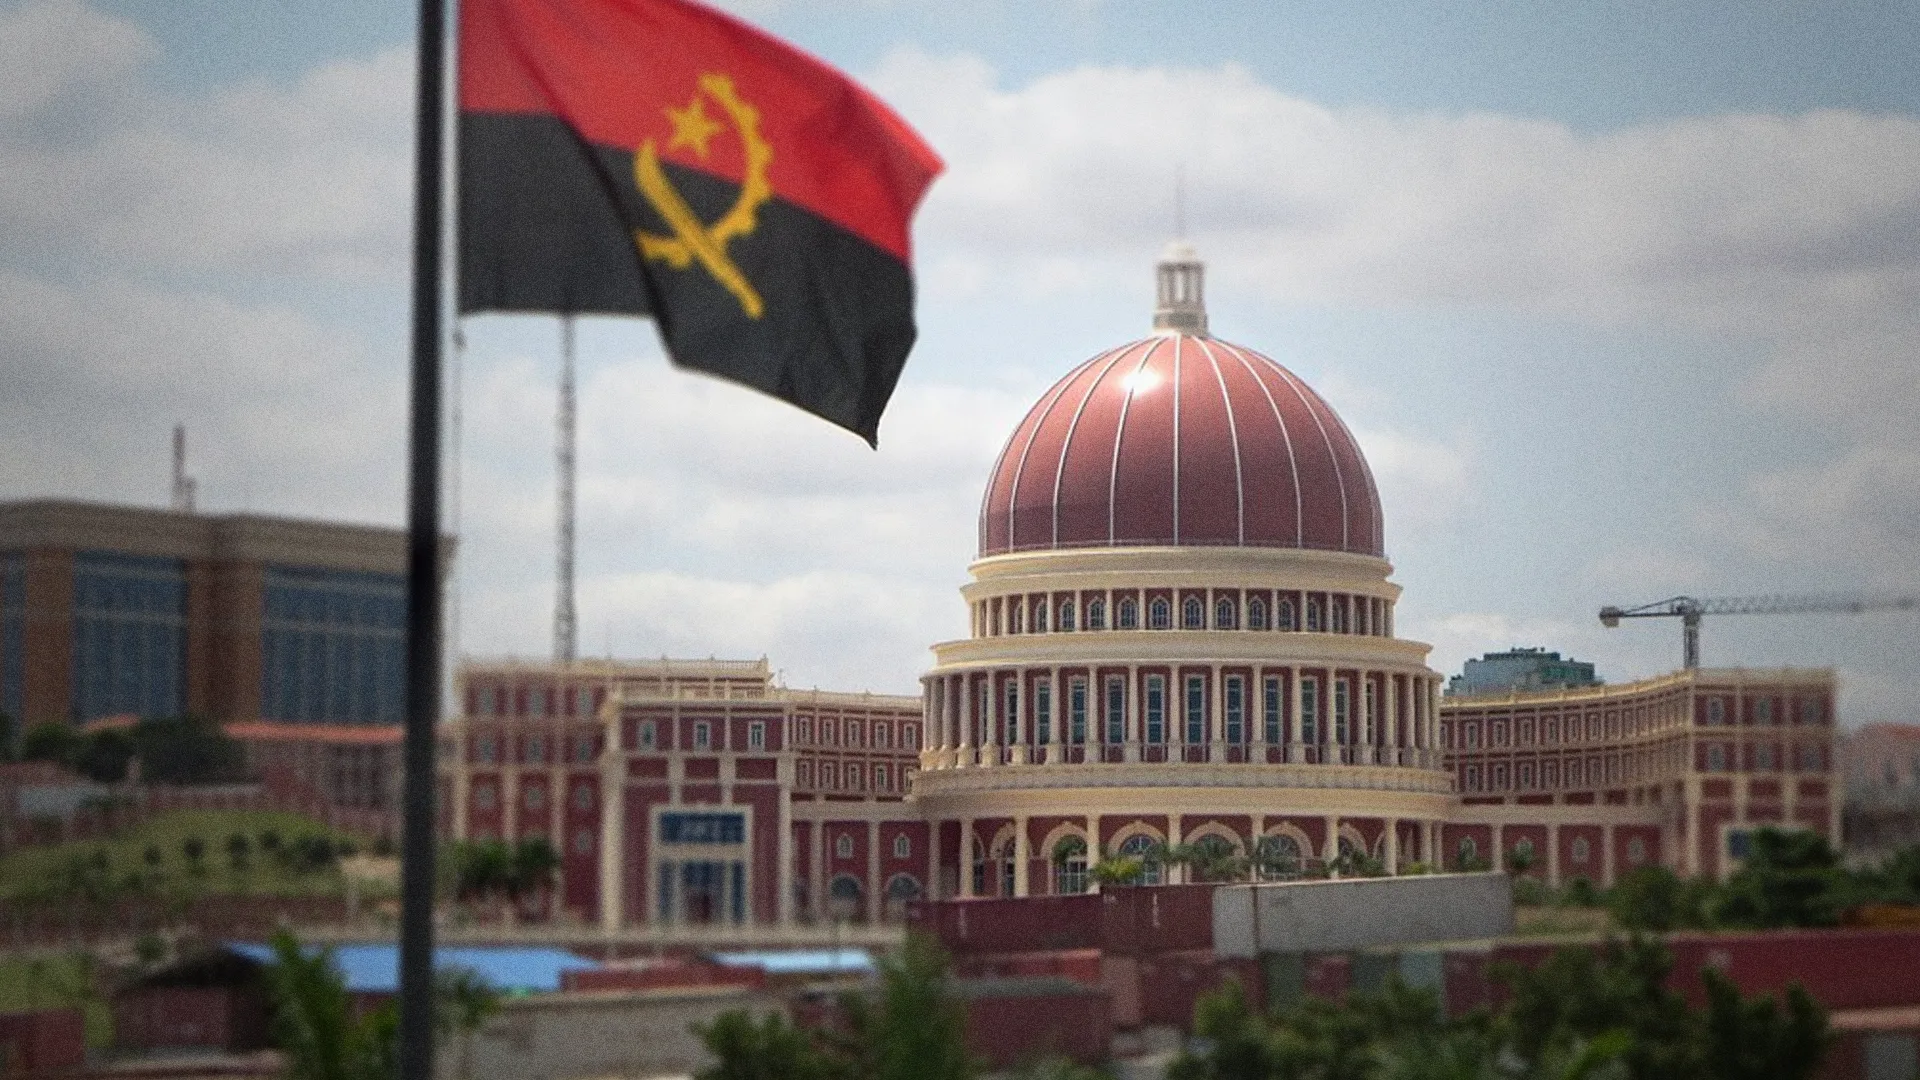 Assembleia Nacional de Angola